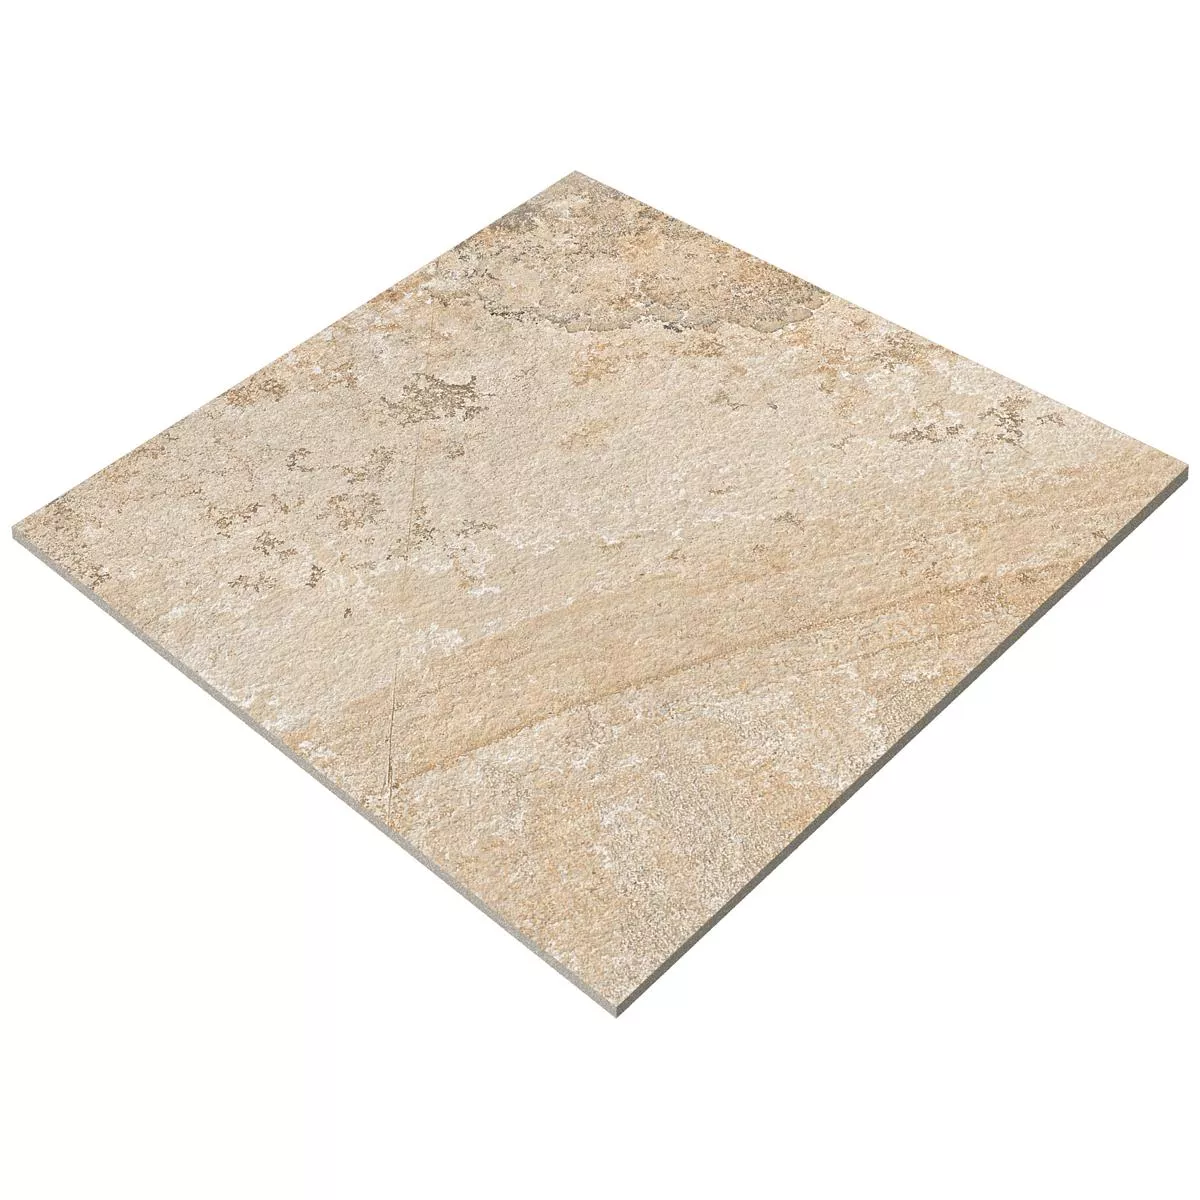 Sample Floor Tiles Travertine Optic Luxor Mat 60x60cm